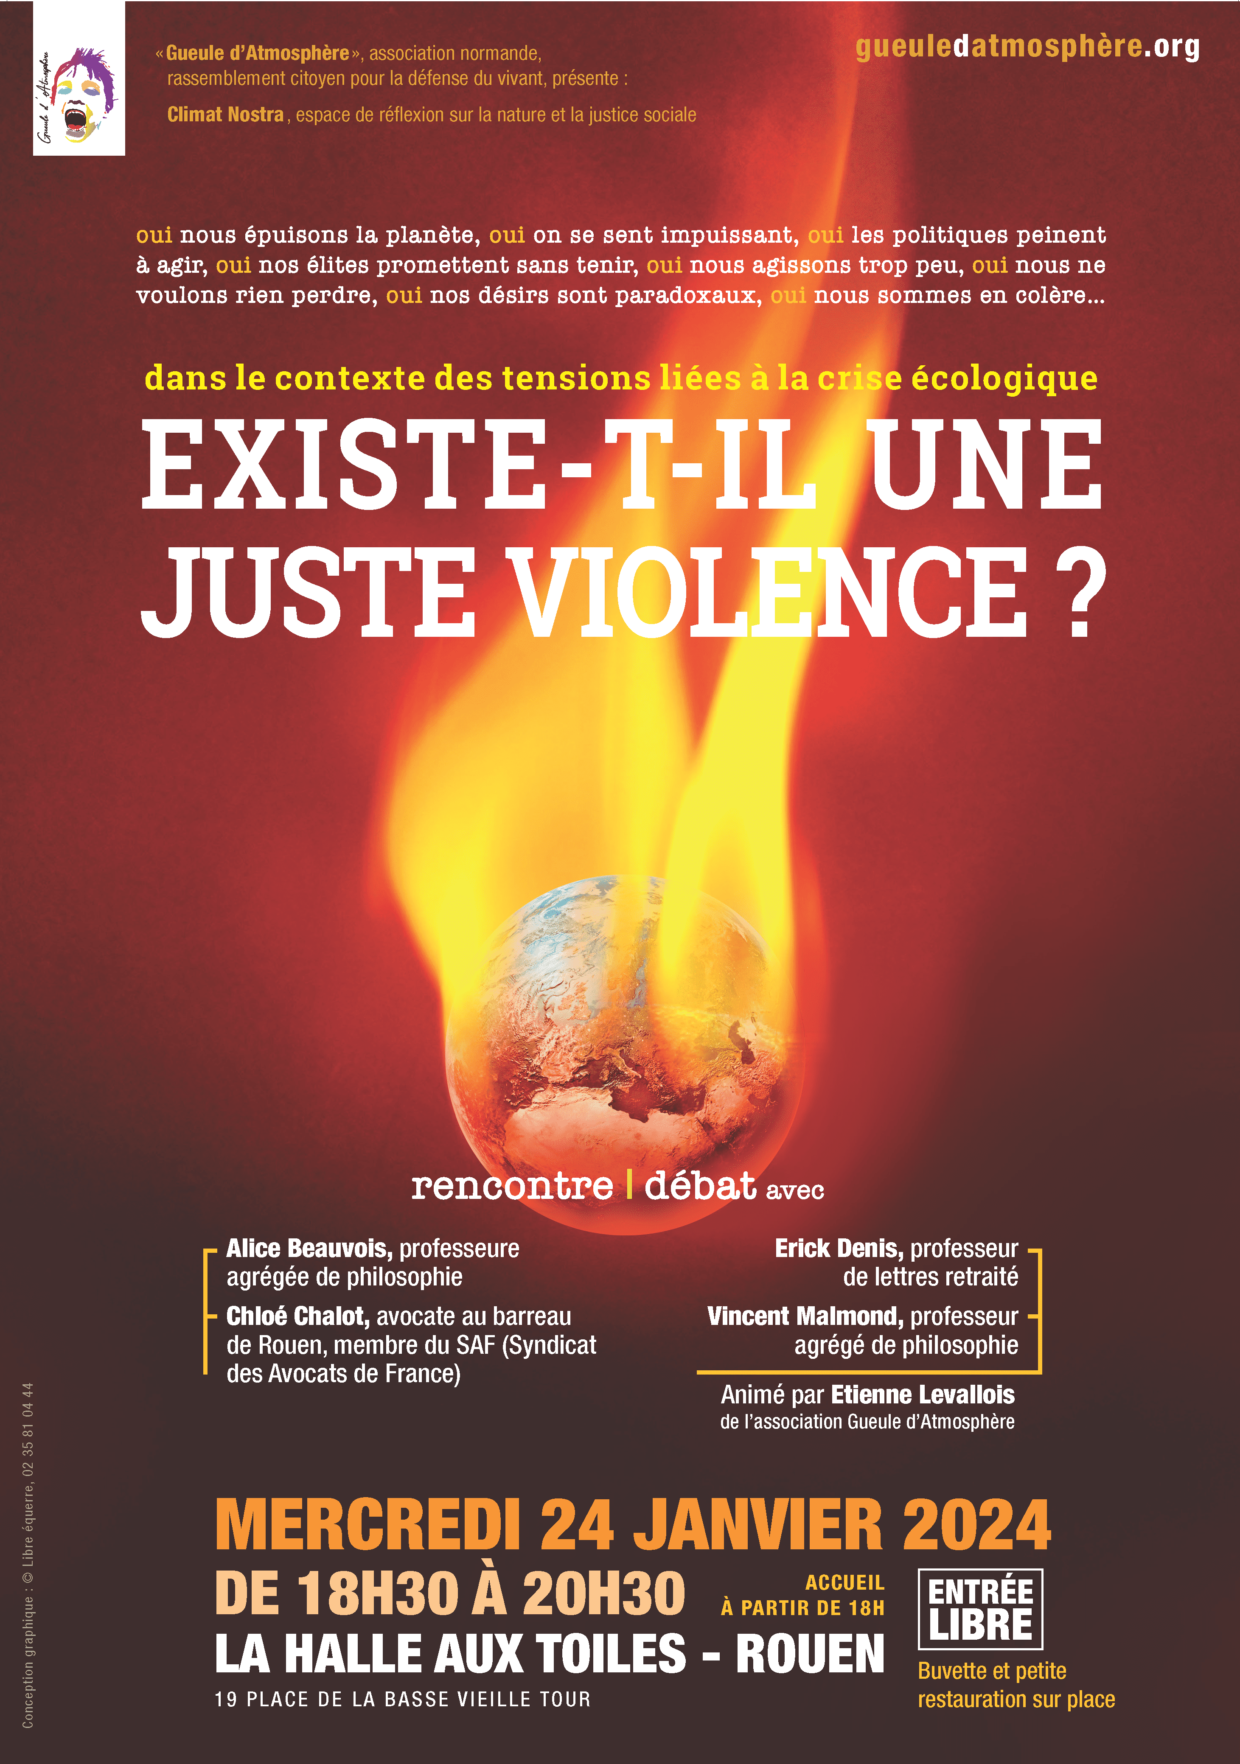 ENCE ? Débat Philosophique sur la Violence dans les Luttes Écologiques : Climat Nostra lance le Dialogue à la Halle aux toiles de Rouen à 18h30